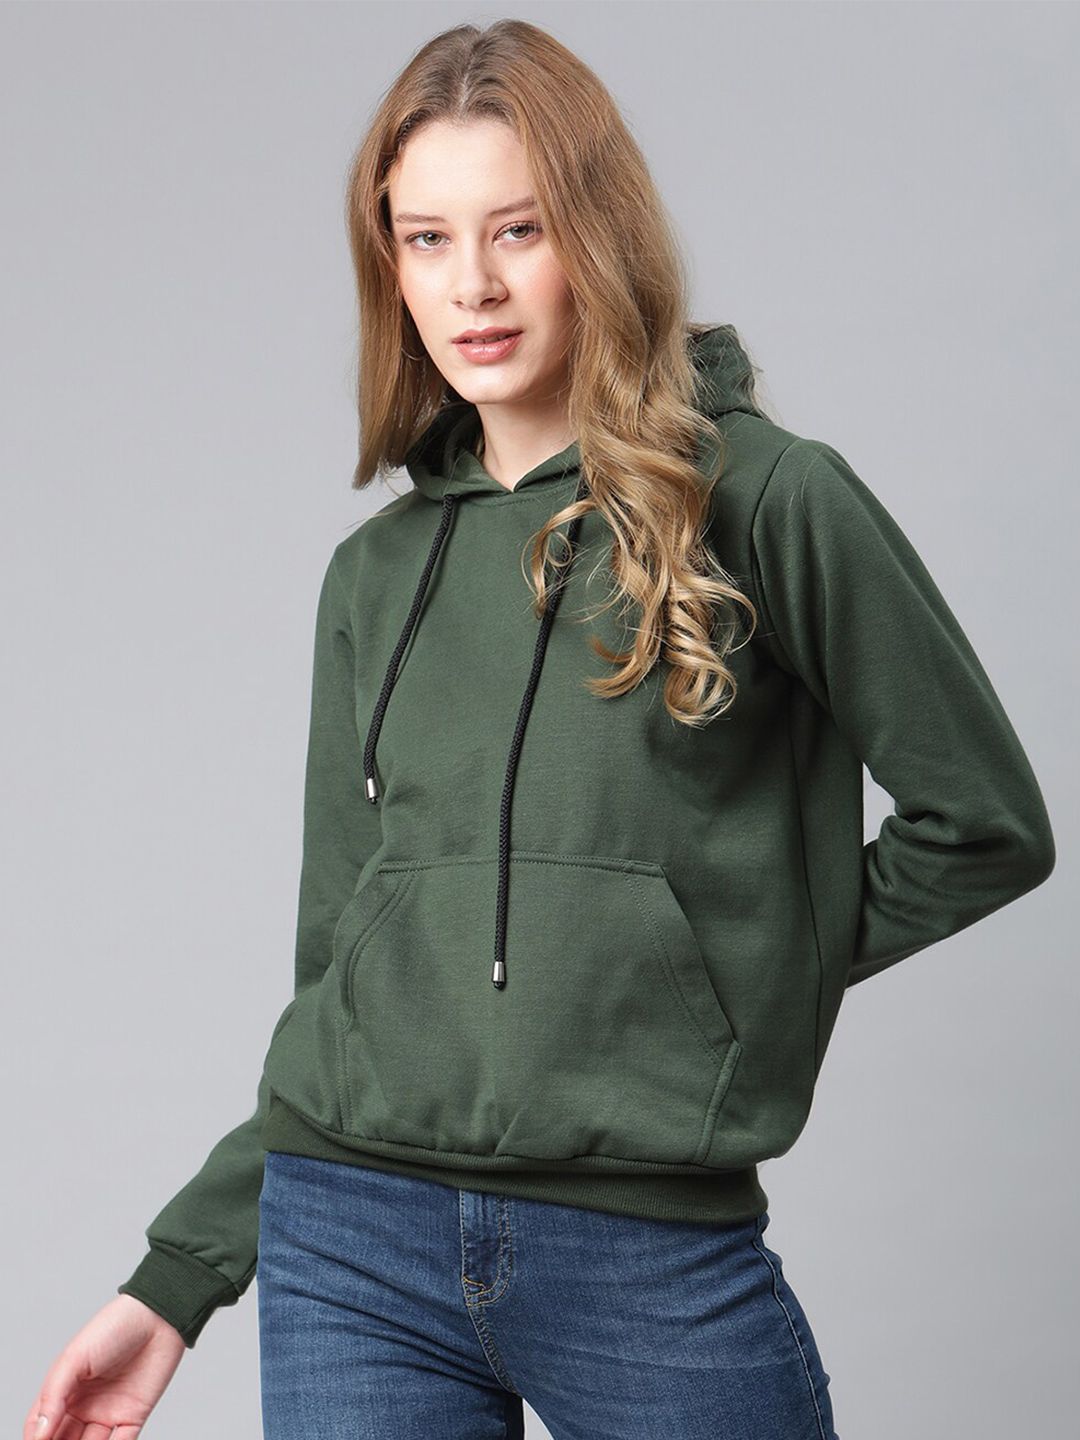 The Vanca Women Olive Green Hooded Sweatshirt Price in India